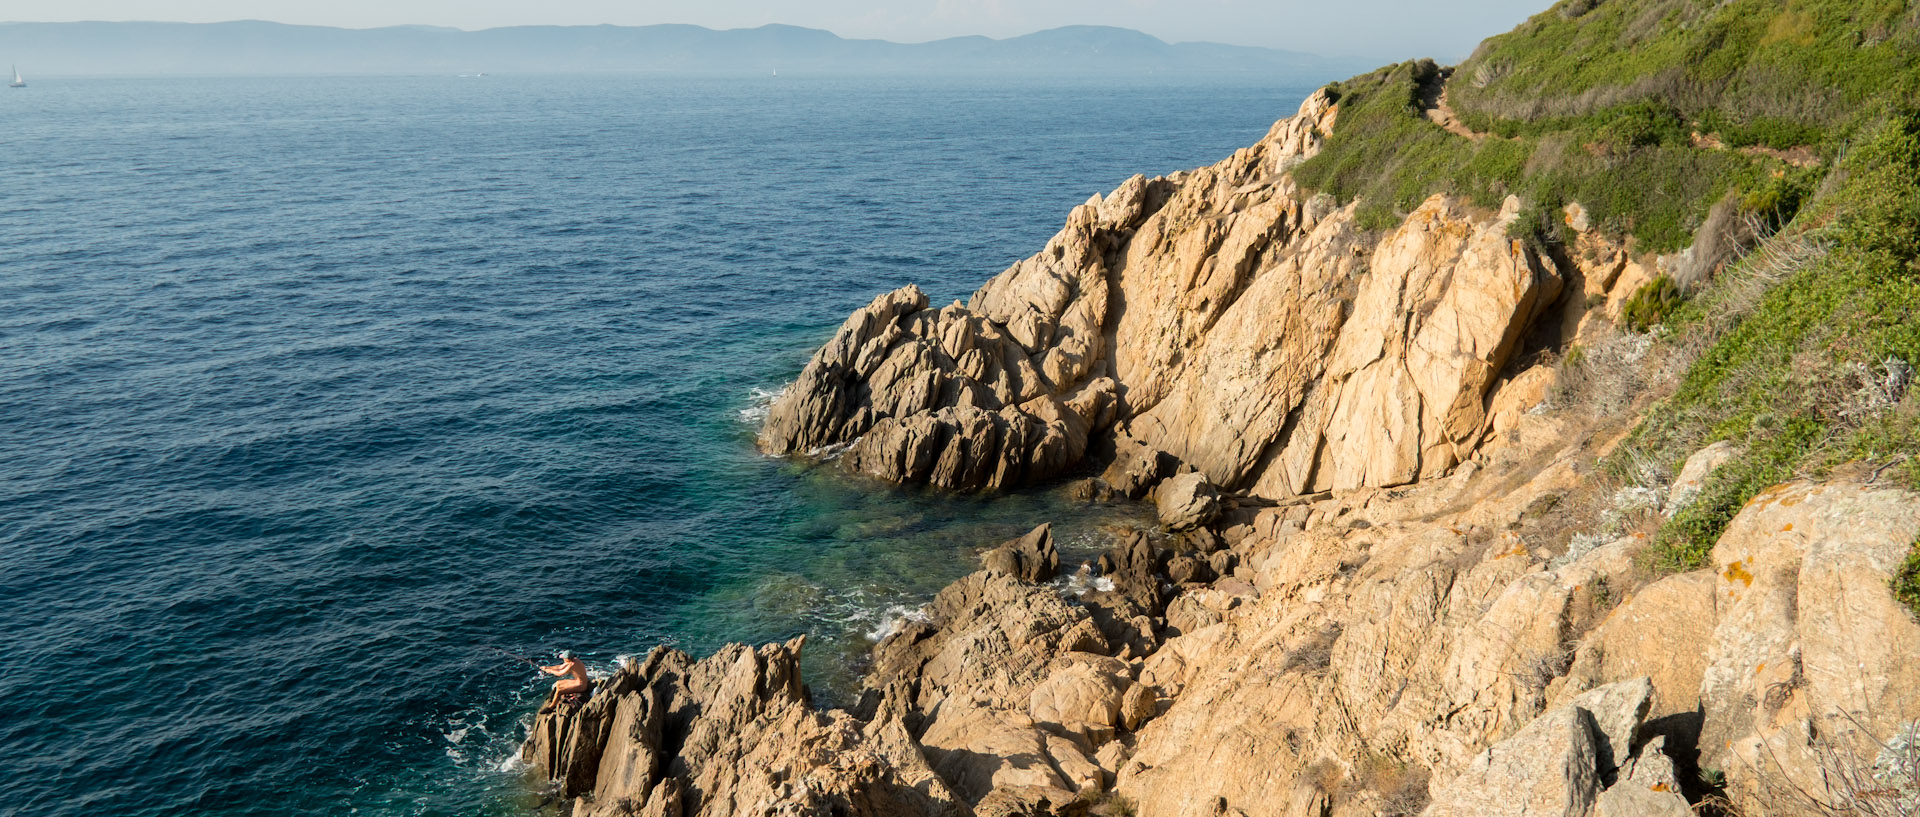 Pêcheur sur un rocher, à l'île du Levant.